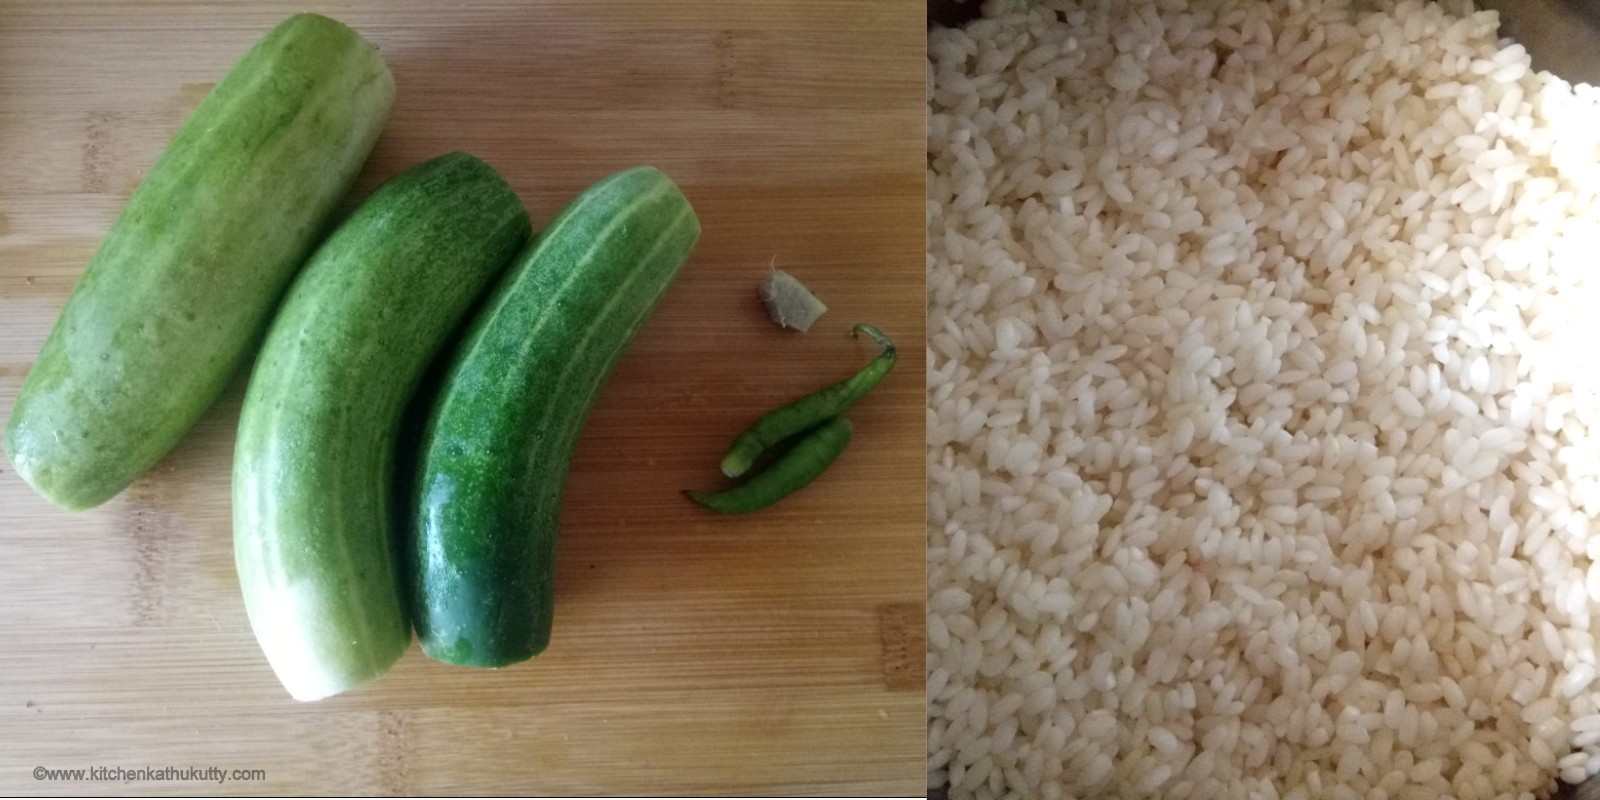 Cucumber Dosa Recipe